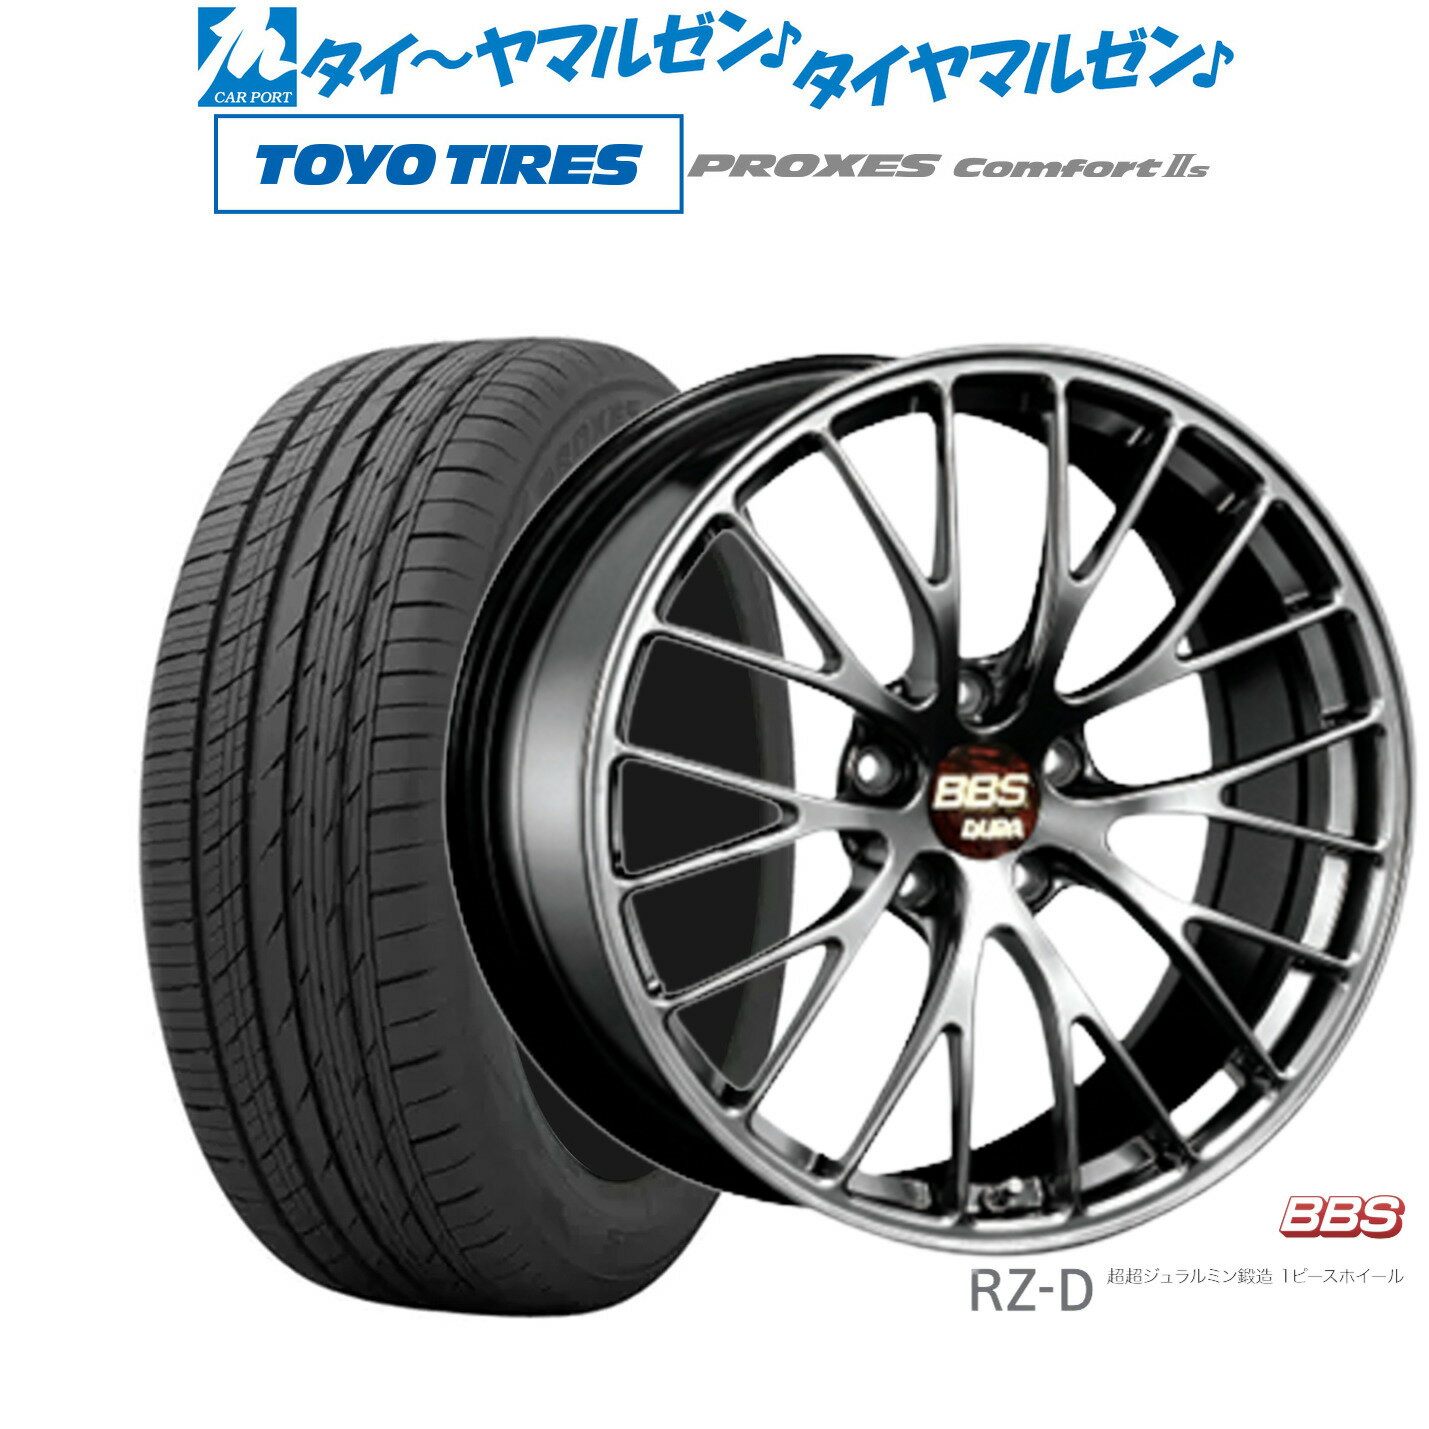 [5/18]ストアポイント3倍!!新品 サマータイヤ ホイール4本セットBBS JAPAN RZ-D20インチ 8.5Jトーヨータイヤ プロクセス PROXES Comfort 2s (コンフォート 2s)255/45R20